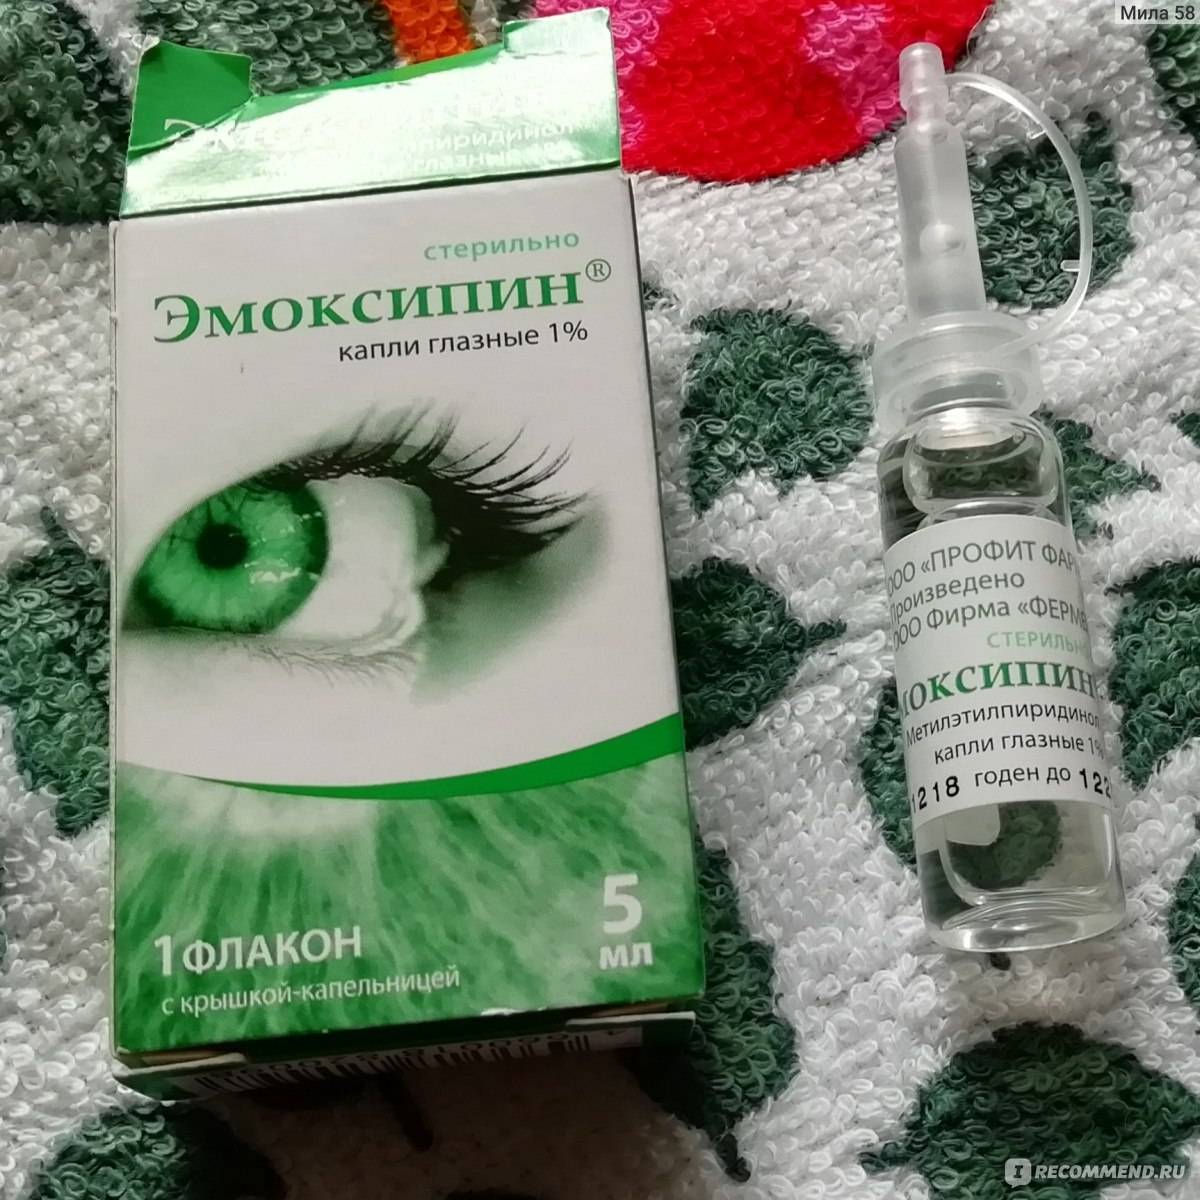 Аналоги глазных капель эмоксипин - чем заменить препарат oculistic.ru
аналоги глазных капель эмоксипин - чем заменить препарат